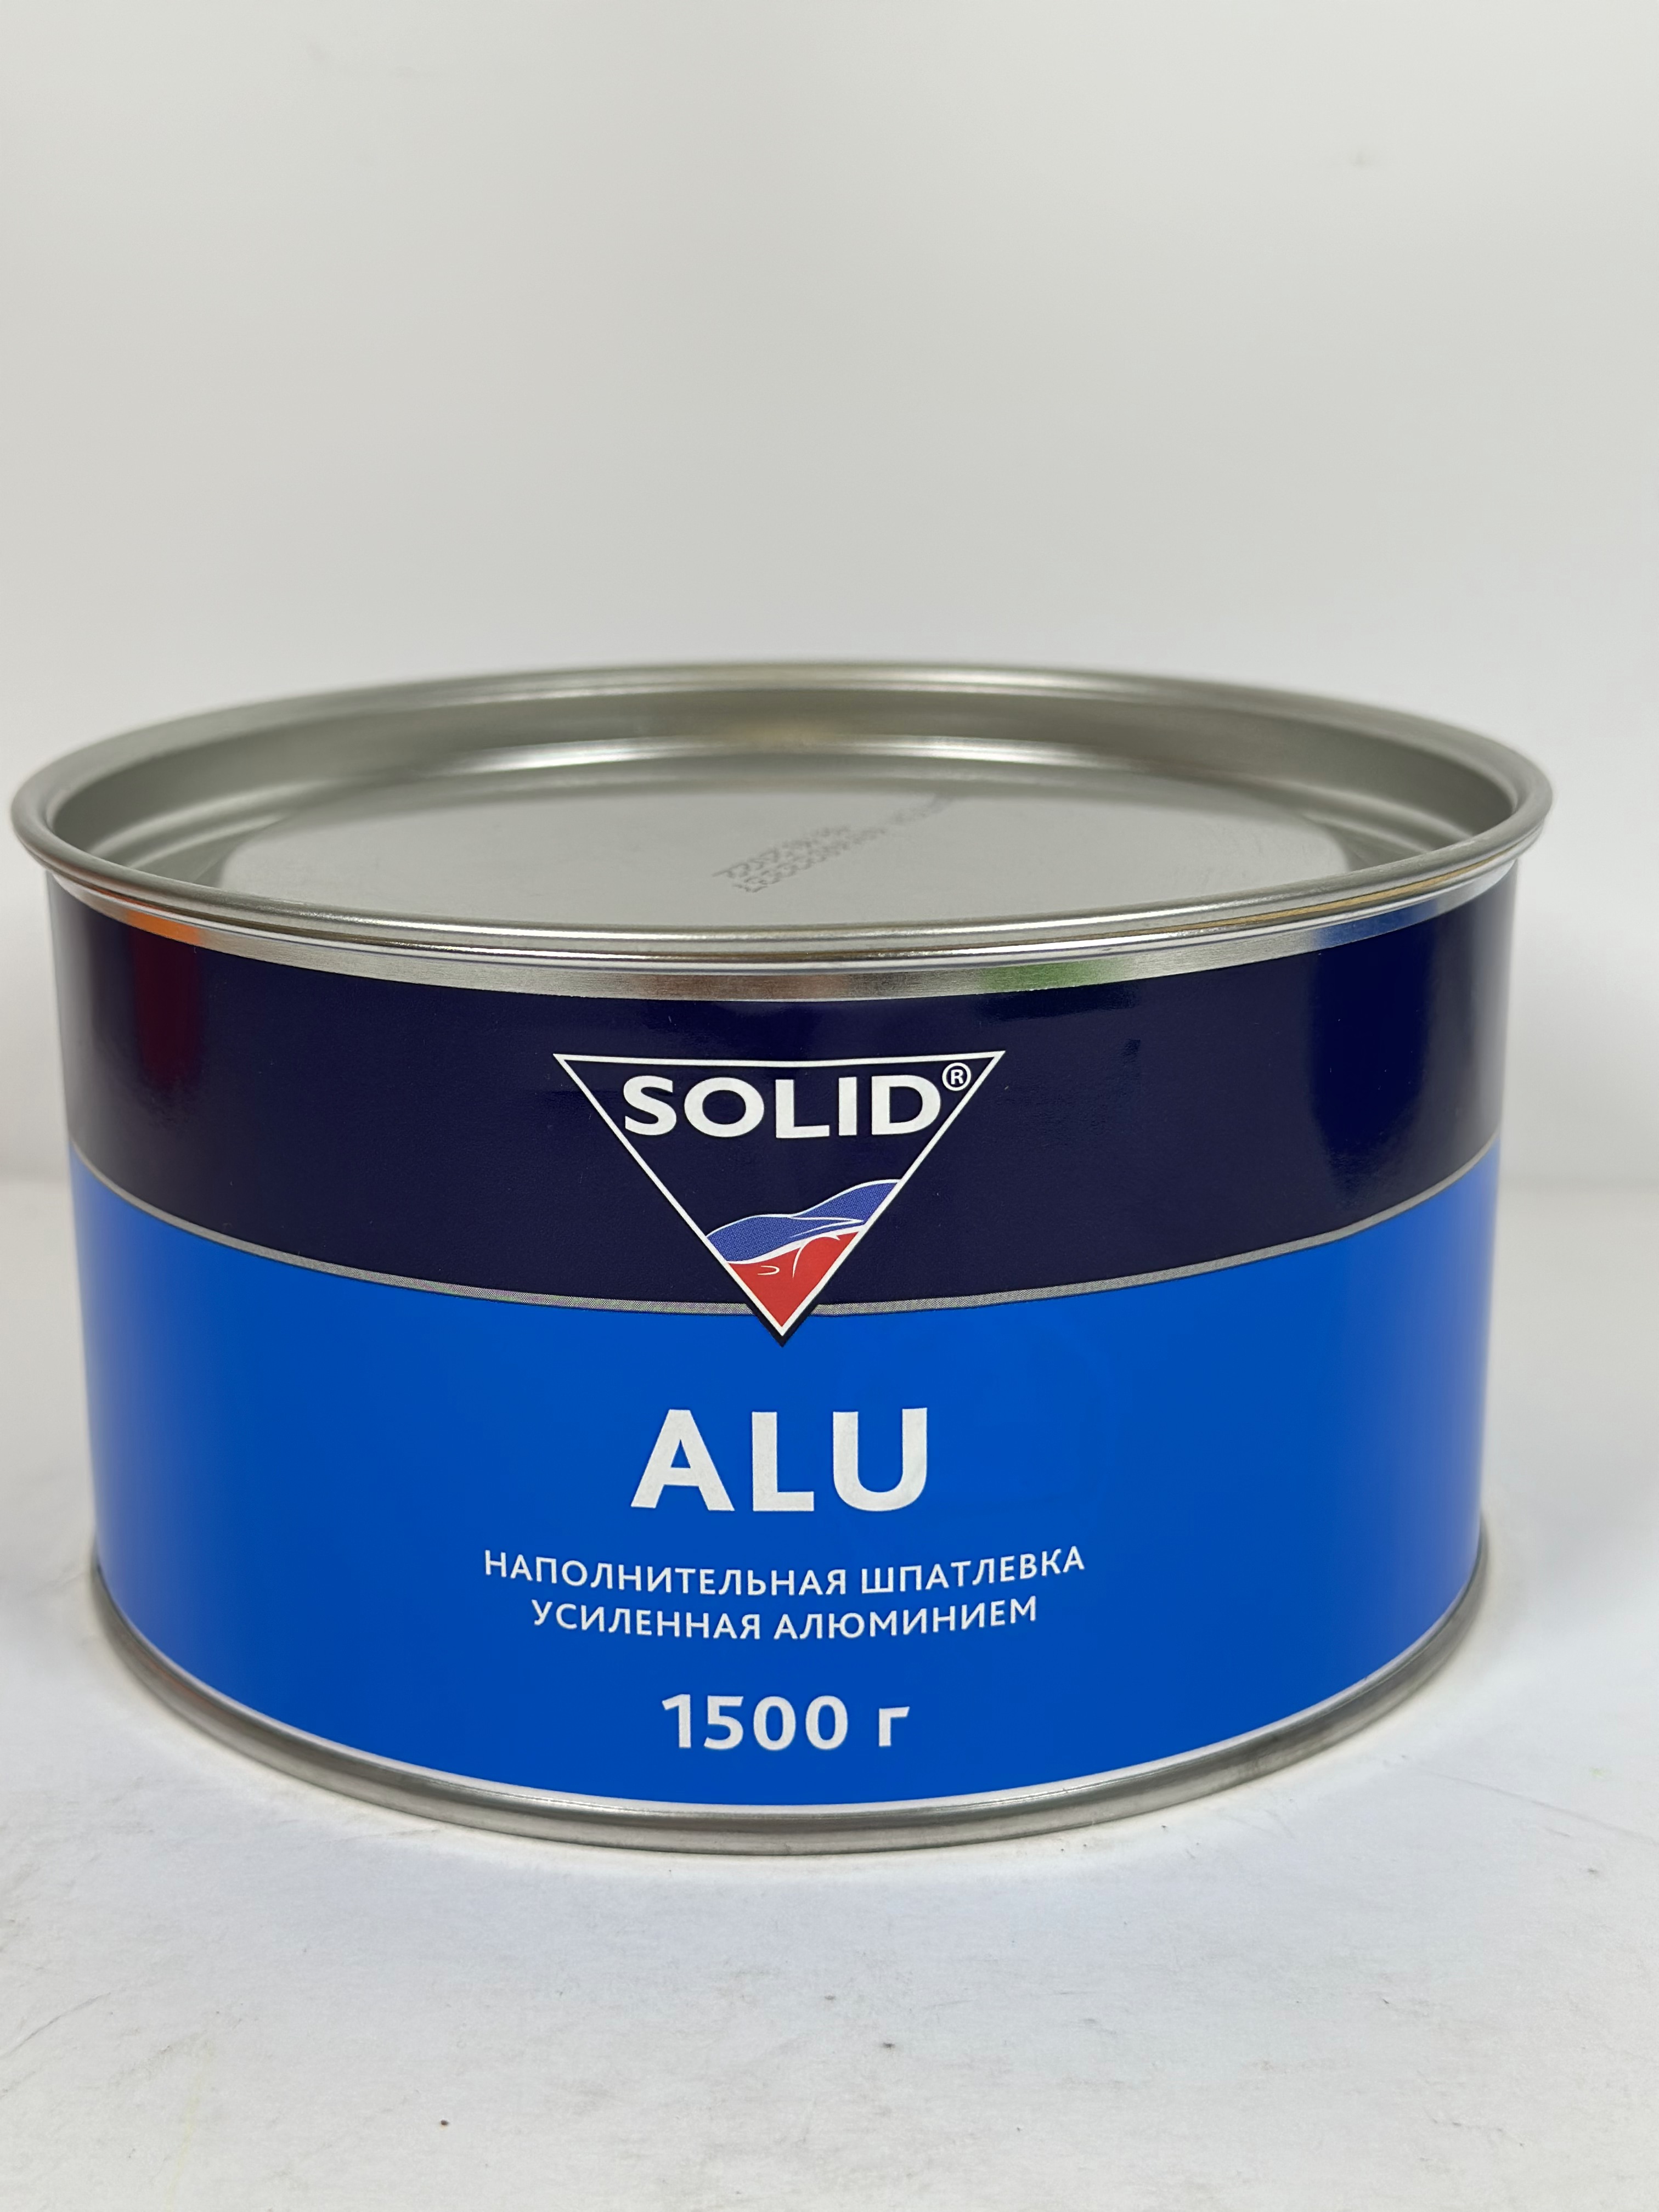 314.1500 SOLID ALU - (фасовка 1500 гр) наполнительная шпатлевка, усиленная алюминием